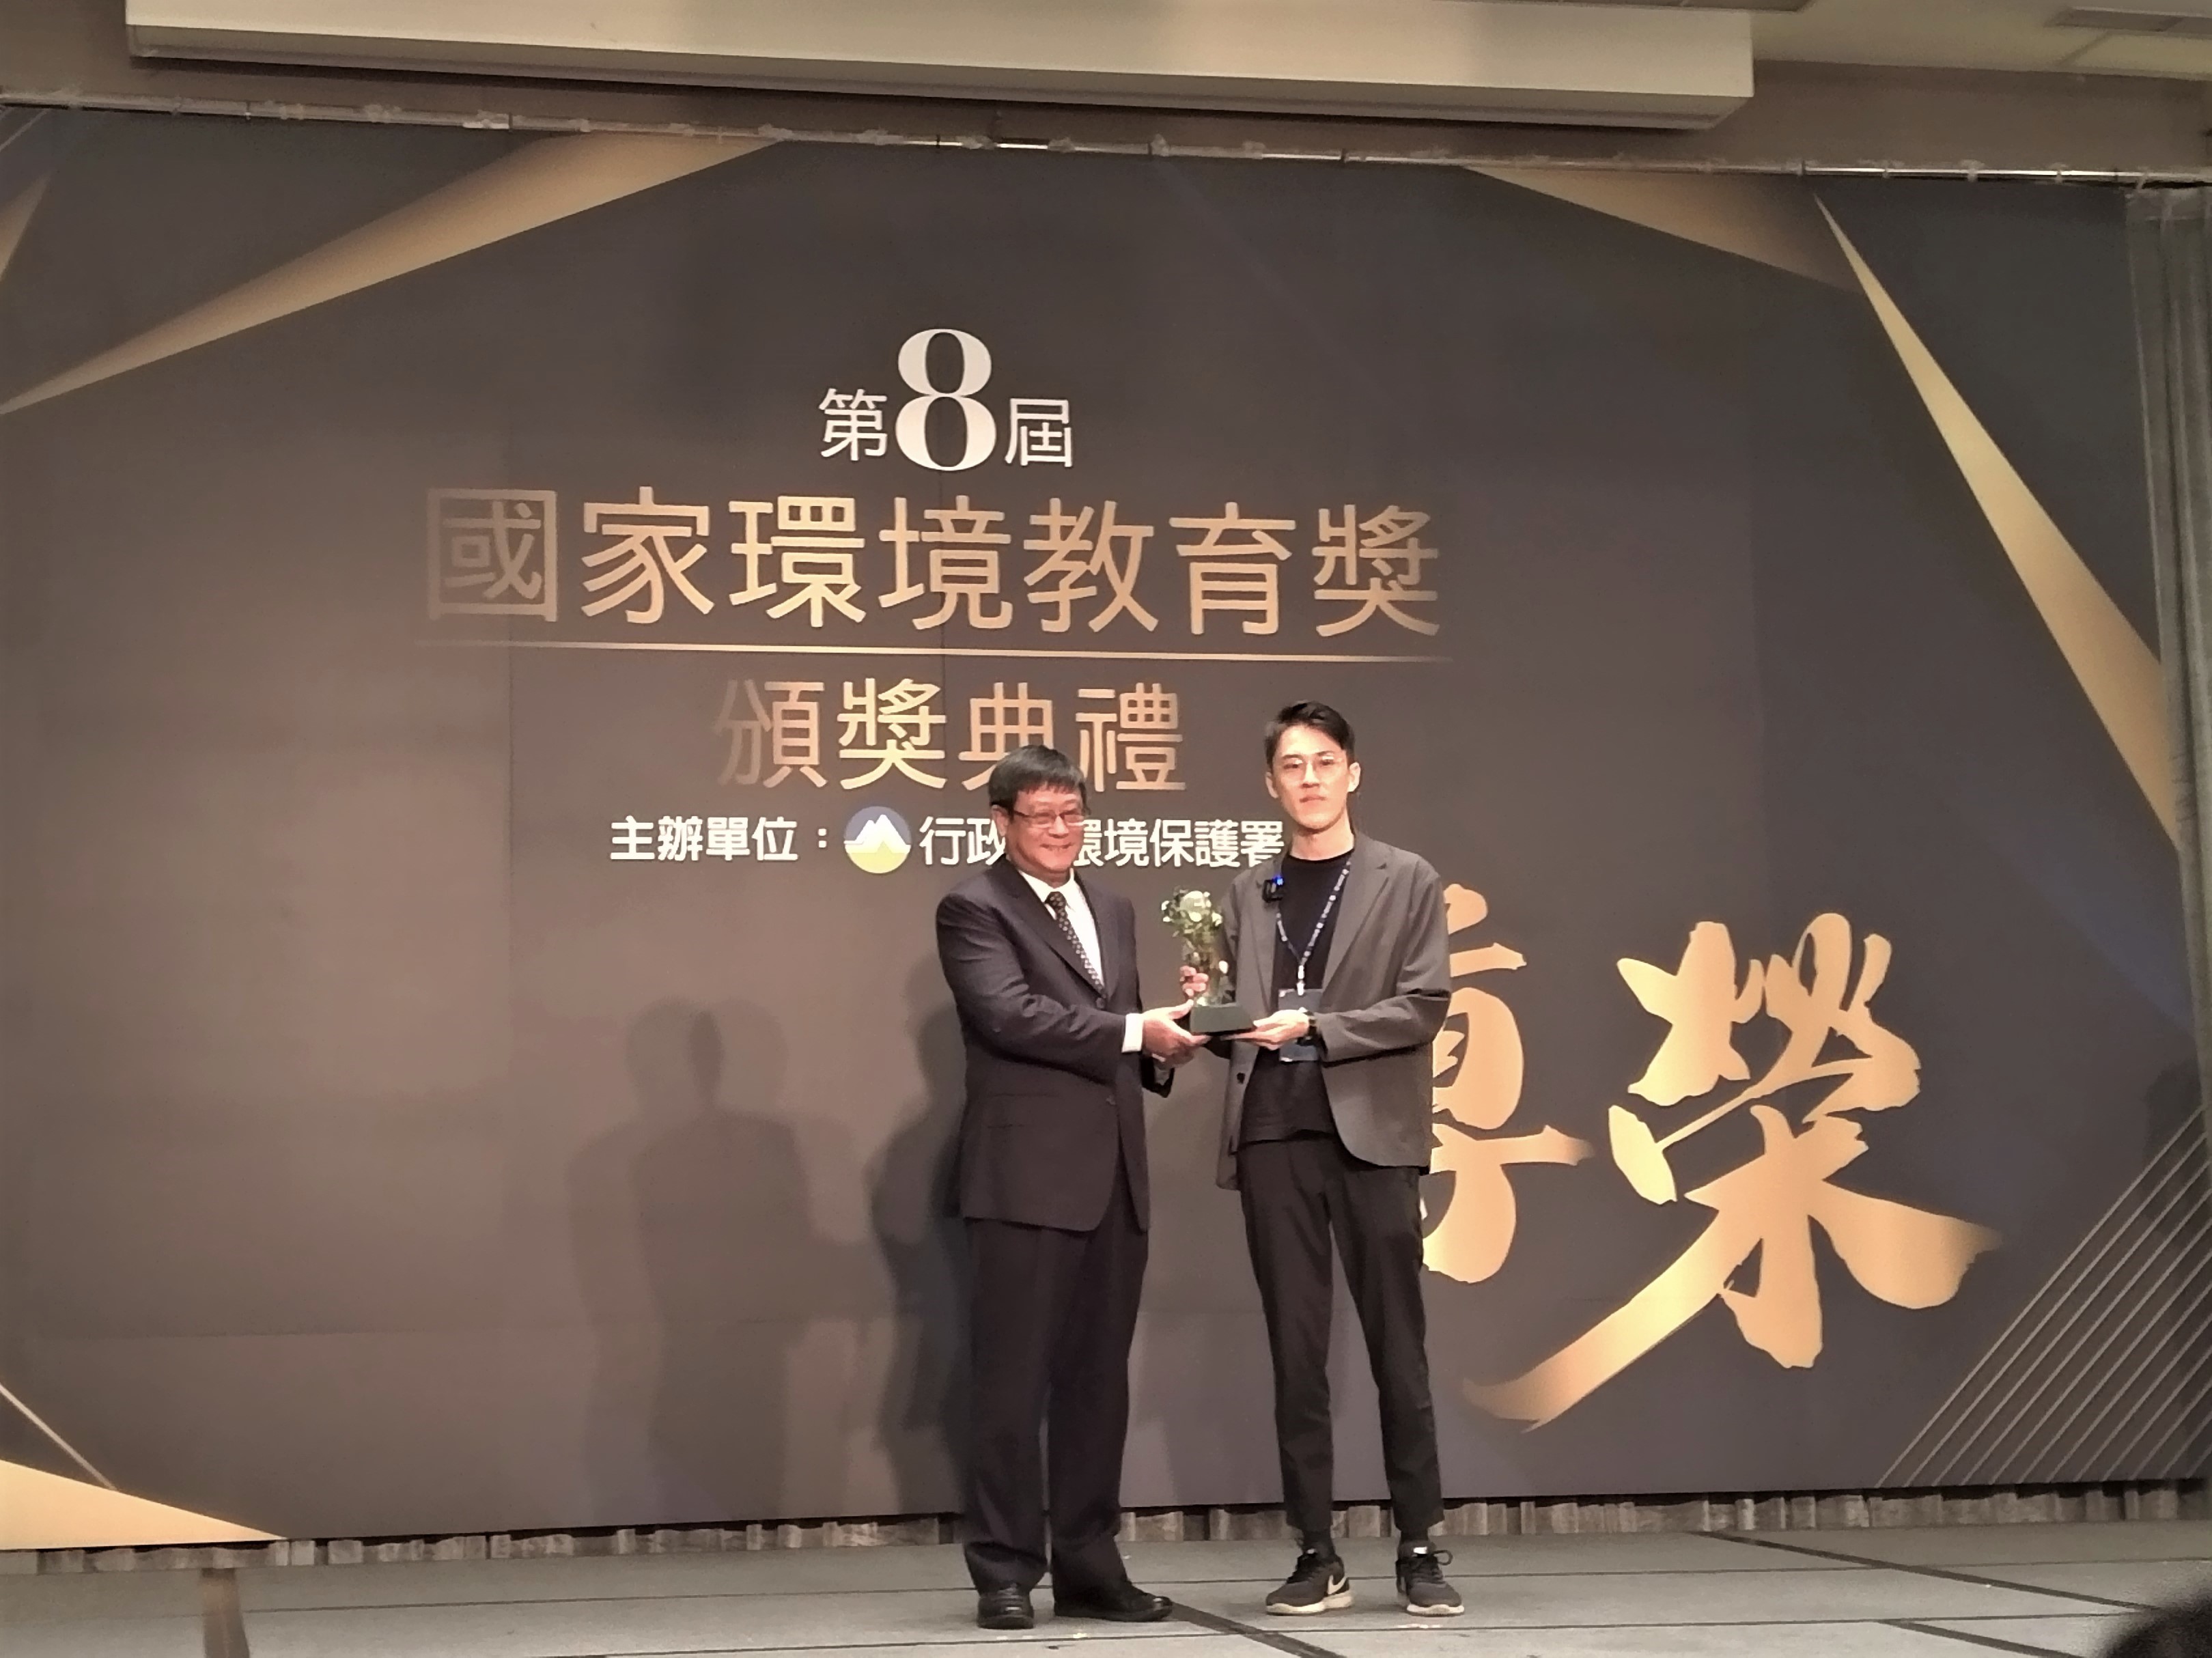 5.「社團法人台灣重新思考環境教育協會」獲得團體組優等獎